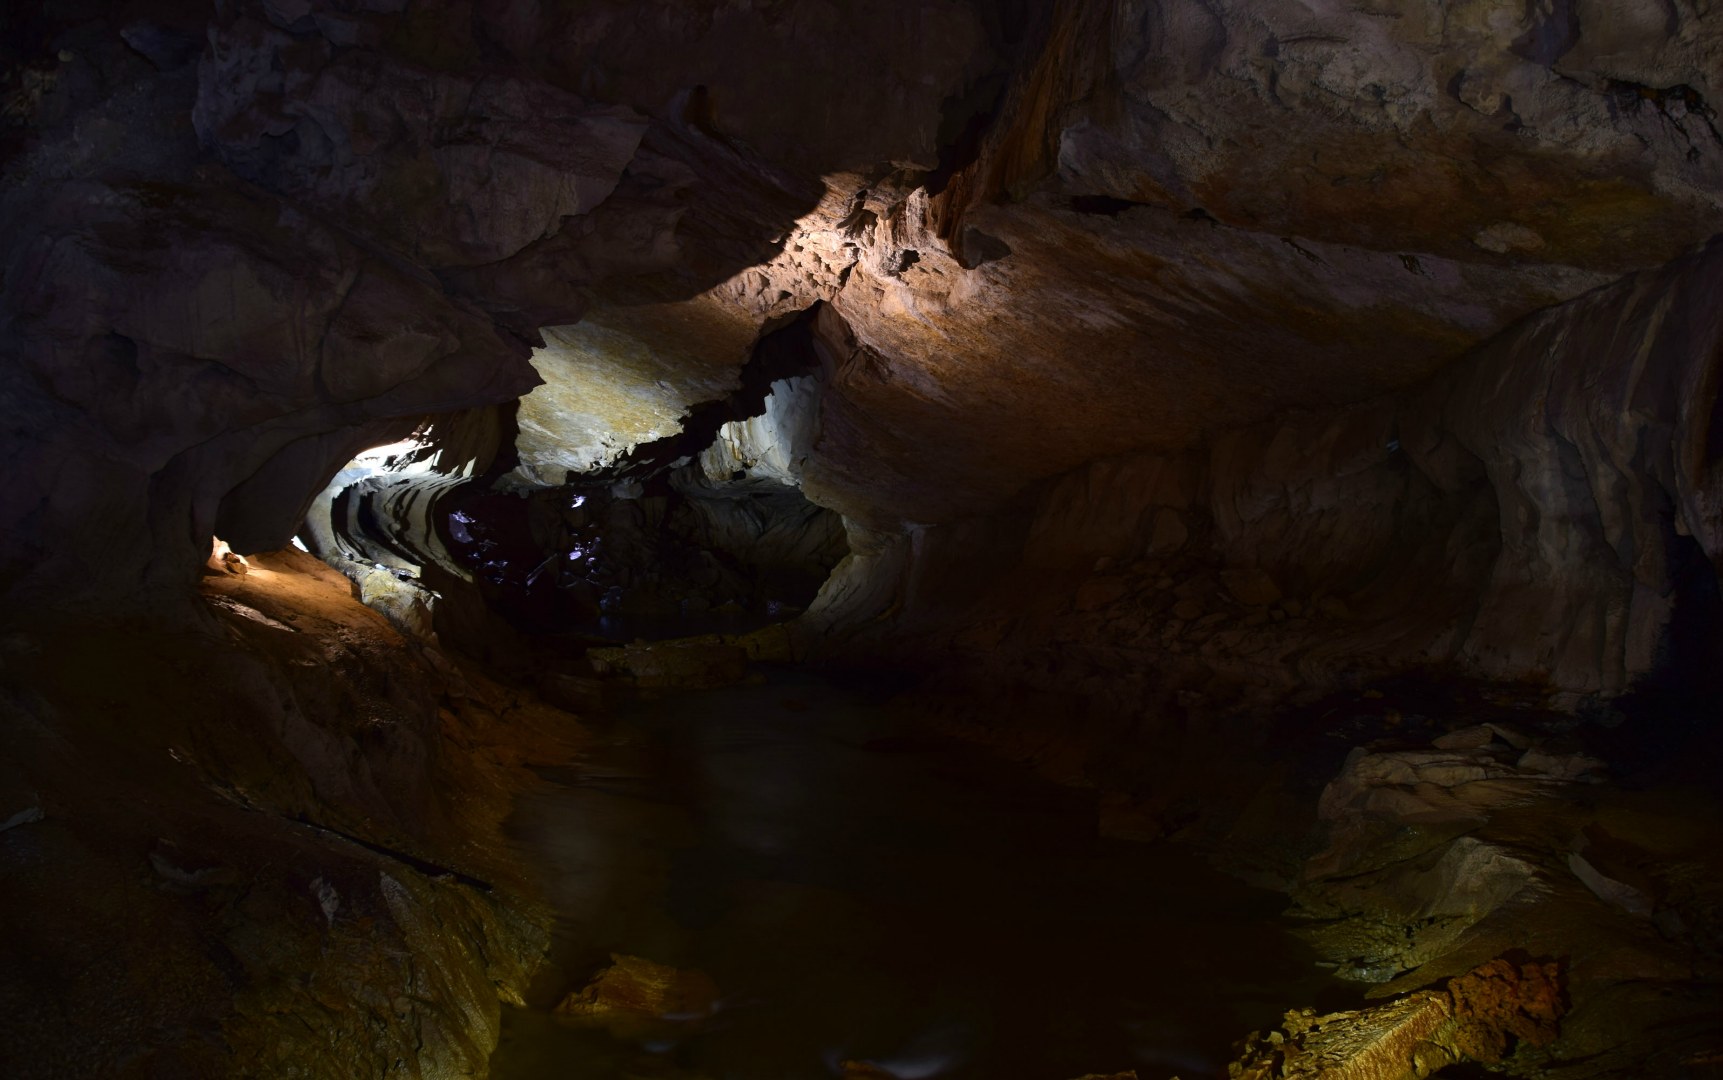 Clearwater Cave, Gunung Mulu National Park